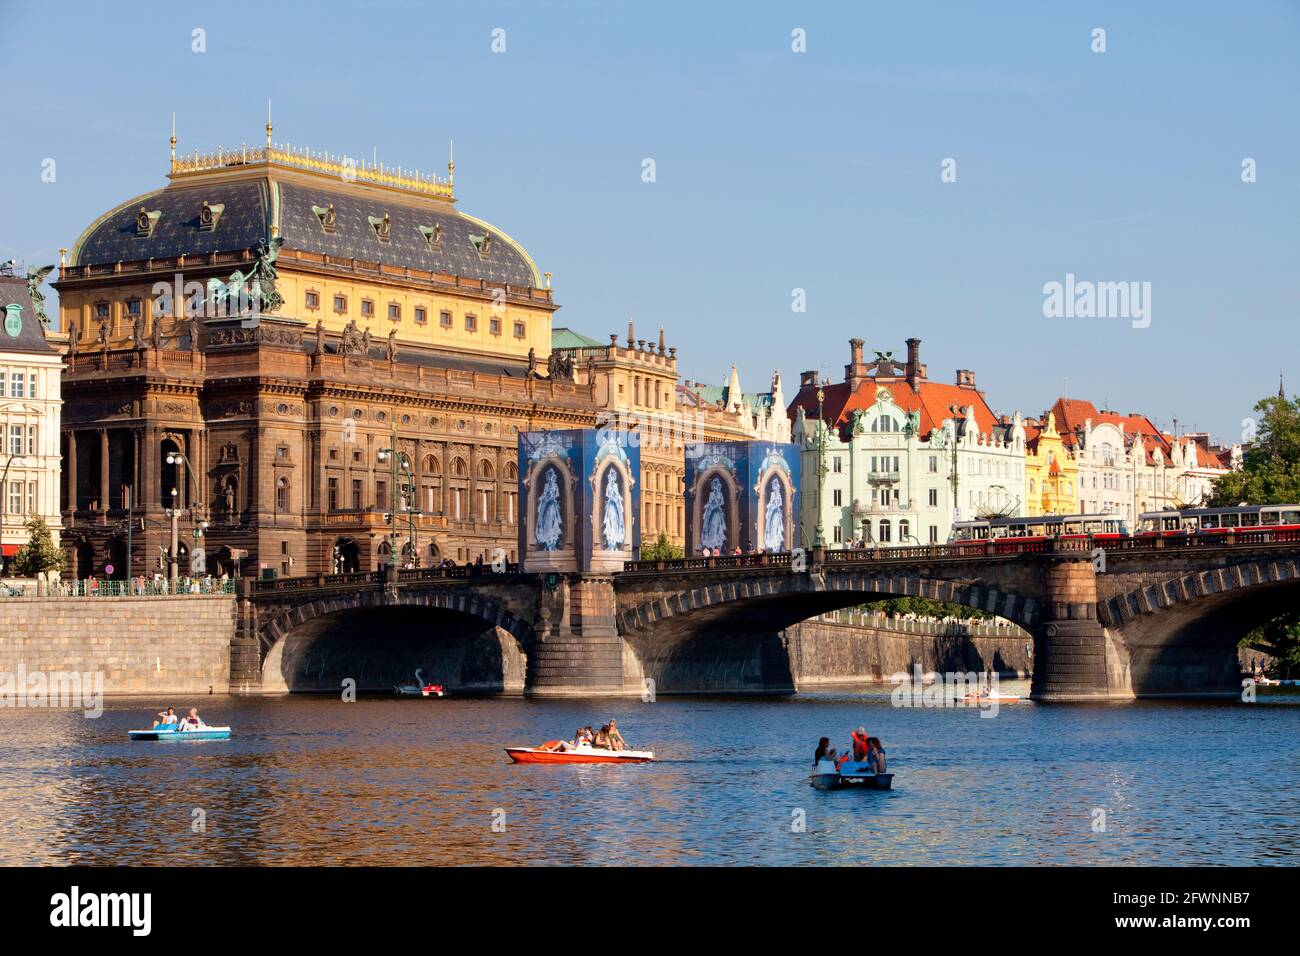 Czechia, Praga - Teatro Nazionale e imbarcazioni da diporto. Foto Stock